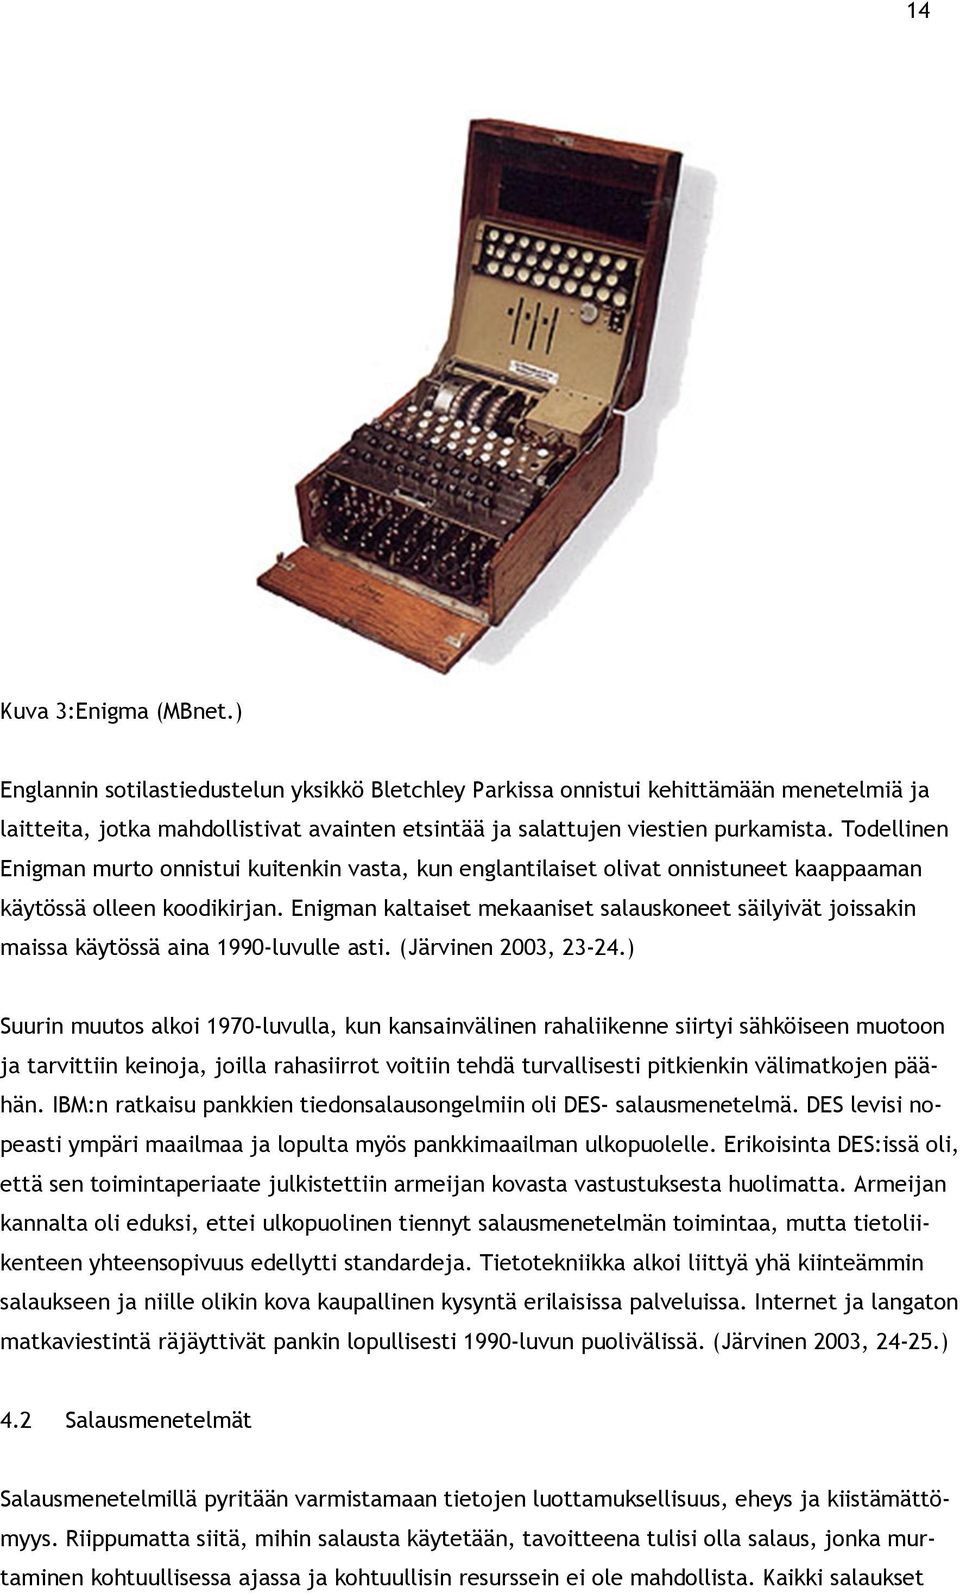 Todellinen Enigman murto onnistui kuitenkin vasta, kun englantilaiset olivat onnistuneet kaappaaman käytössä olleen koodikirjan.